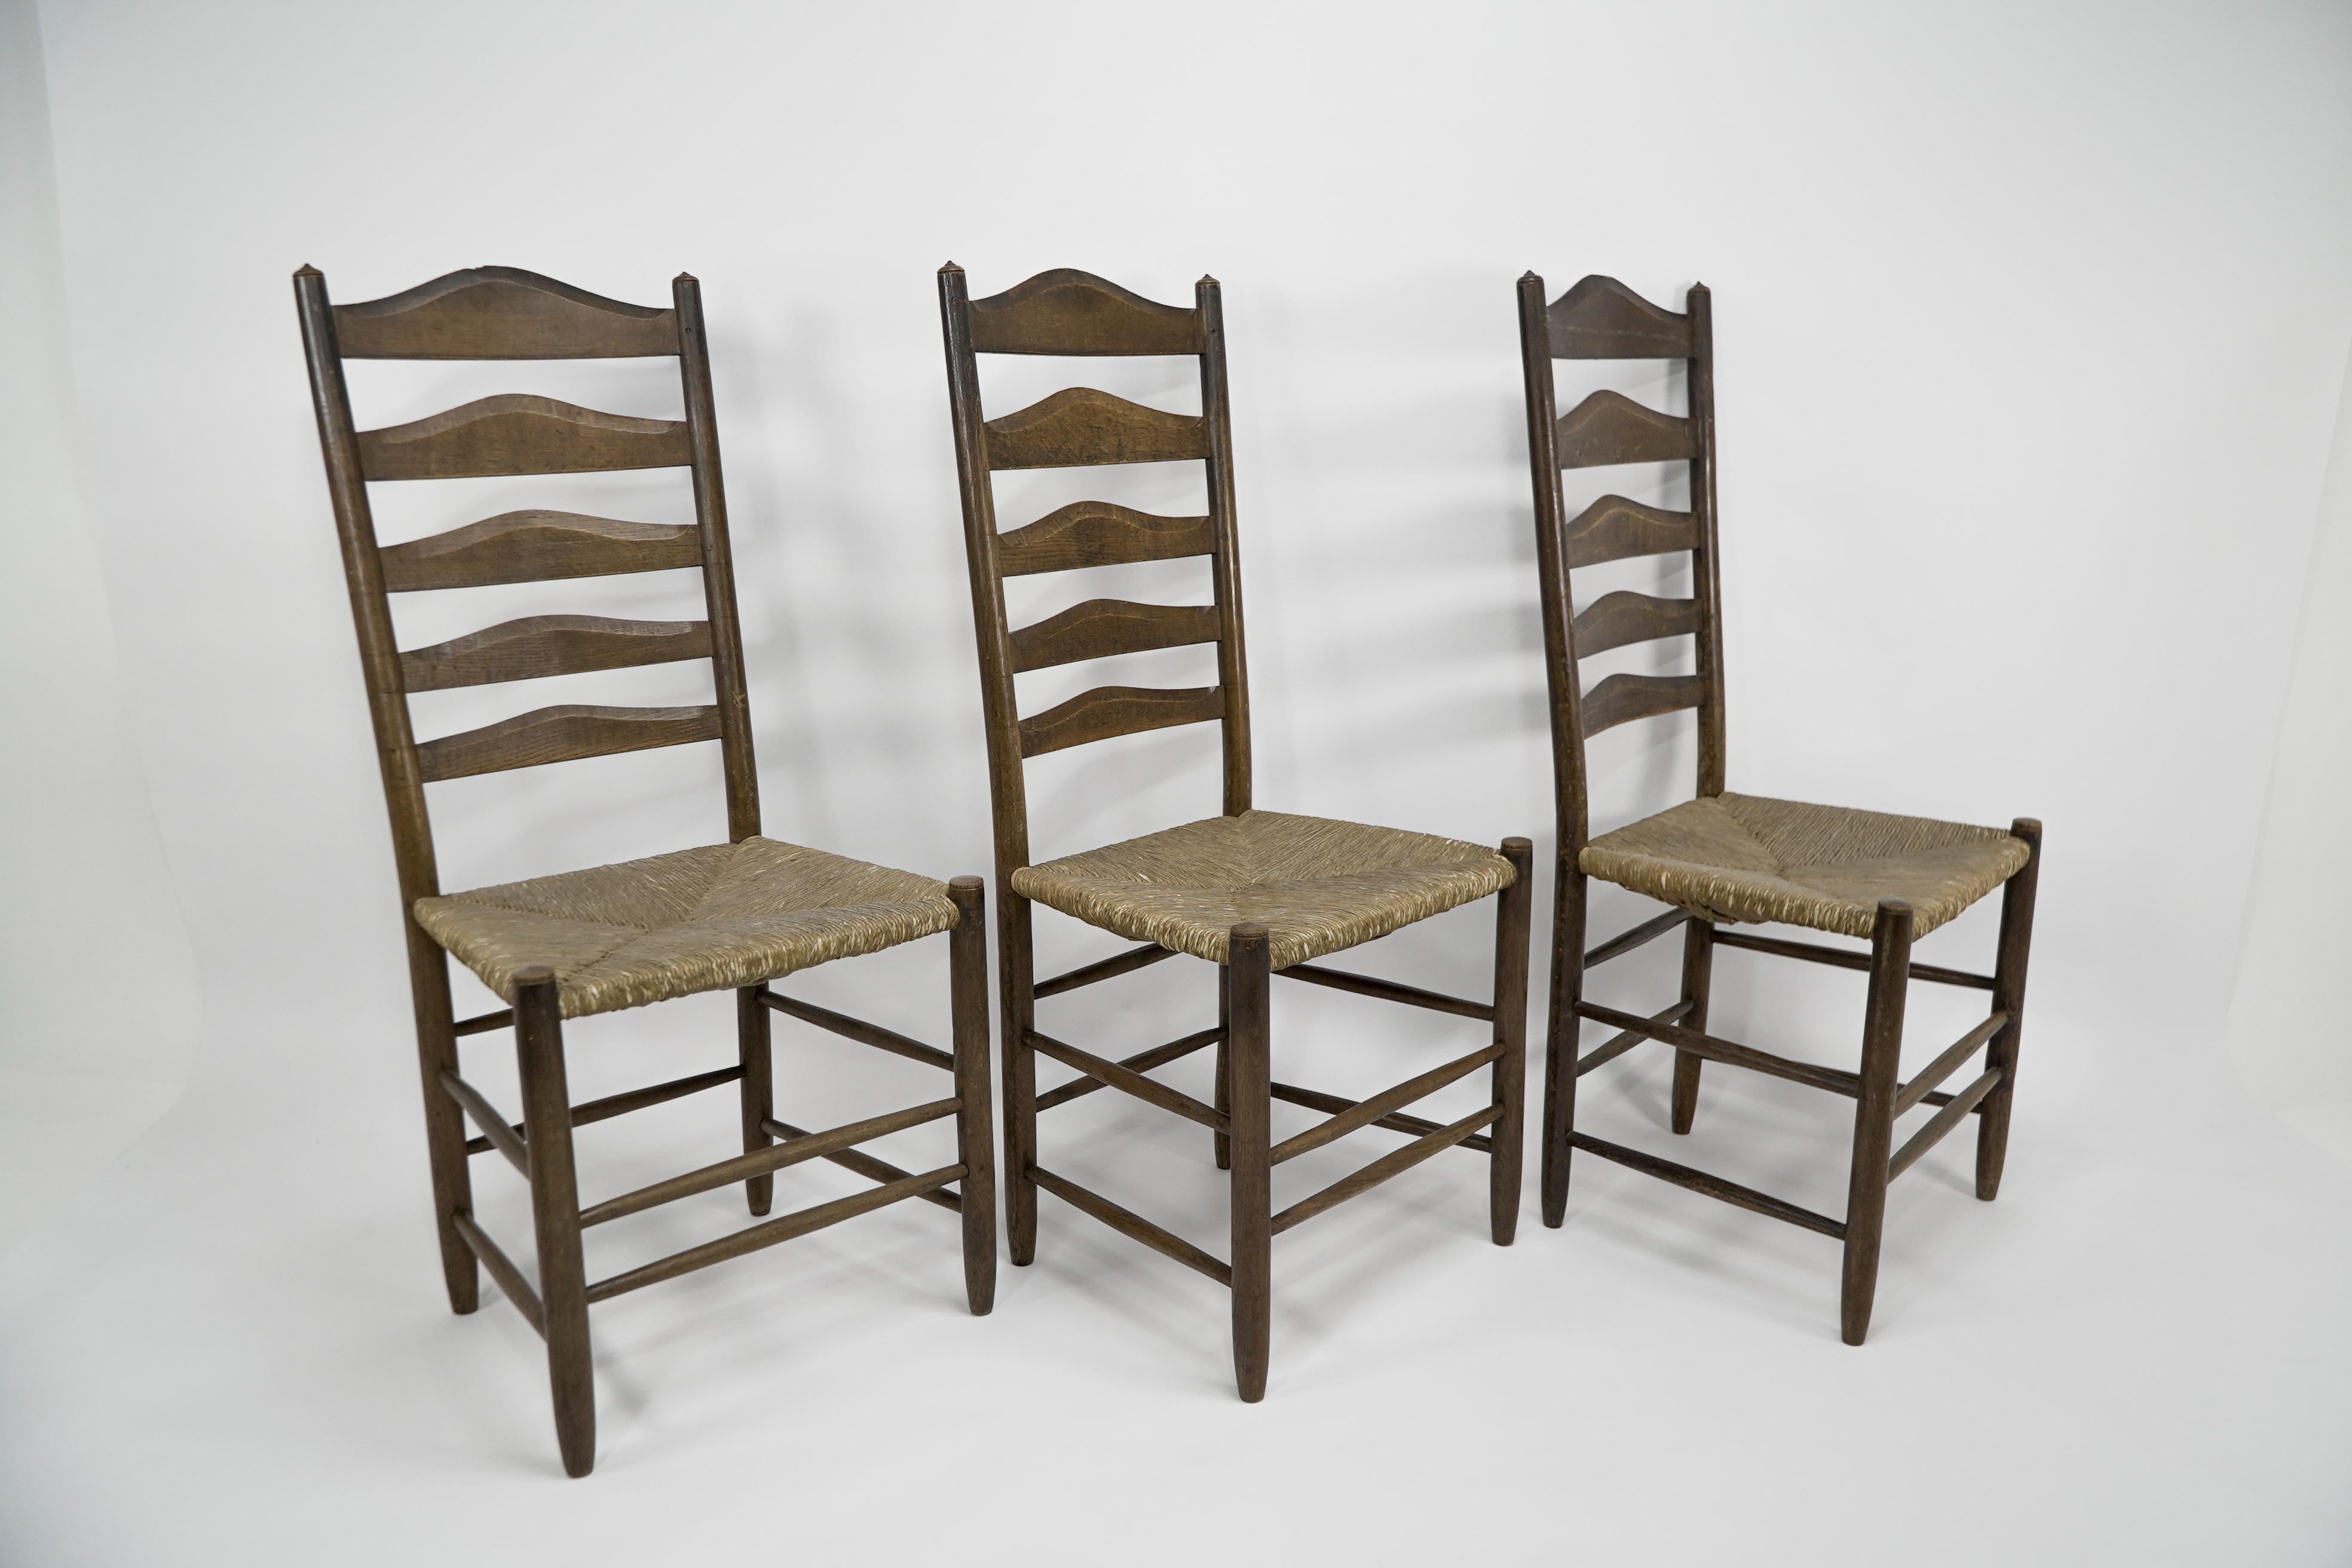 À la manière d'E Gimson. Un ensemble de trois chaises de salle à manger ou d'appoint en chêne de qualité Arts and Crafts avec des échelles sculptées à la main à l'arrière et conservant les sièges en jonc d'origine. Prix de l'ensemble